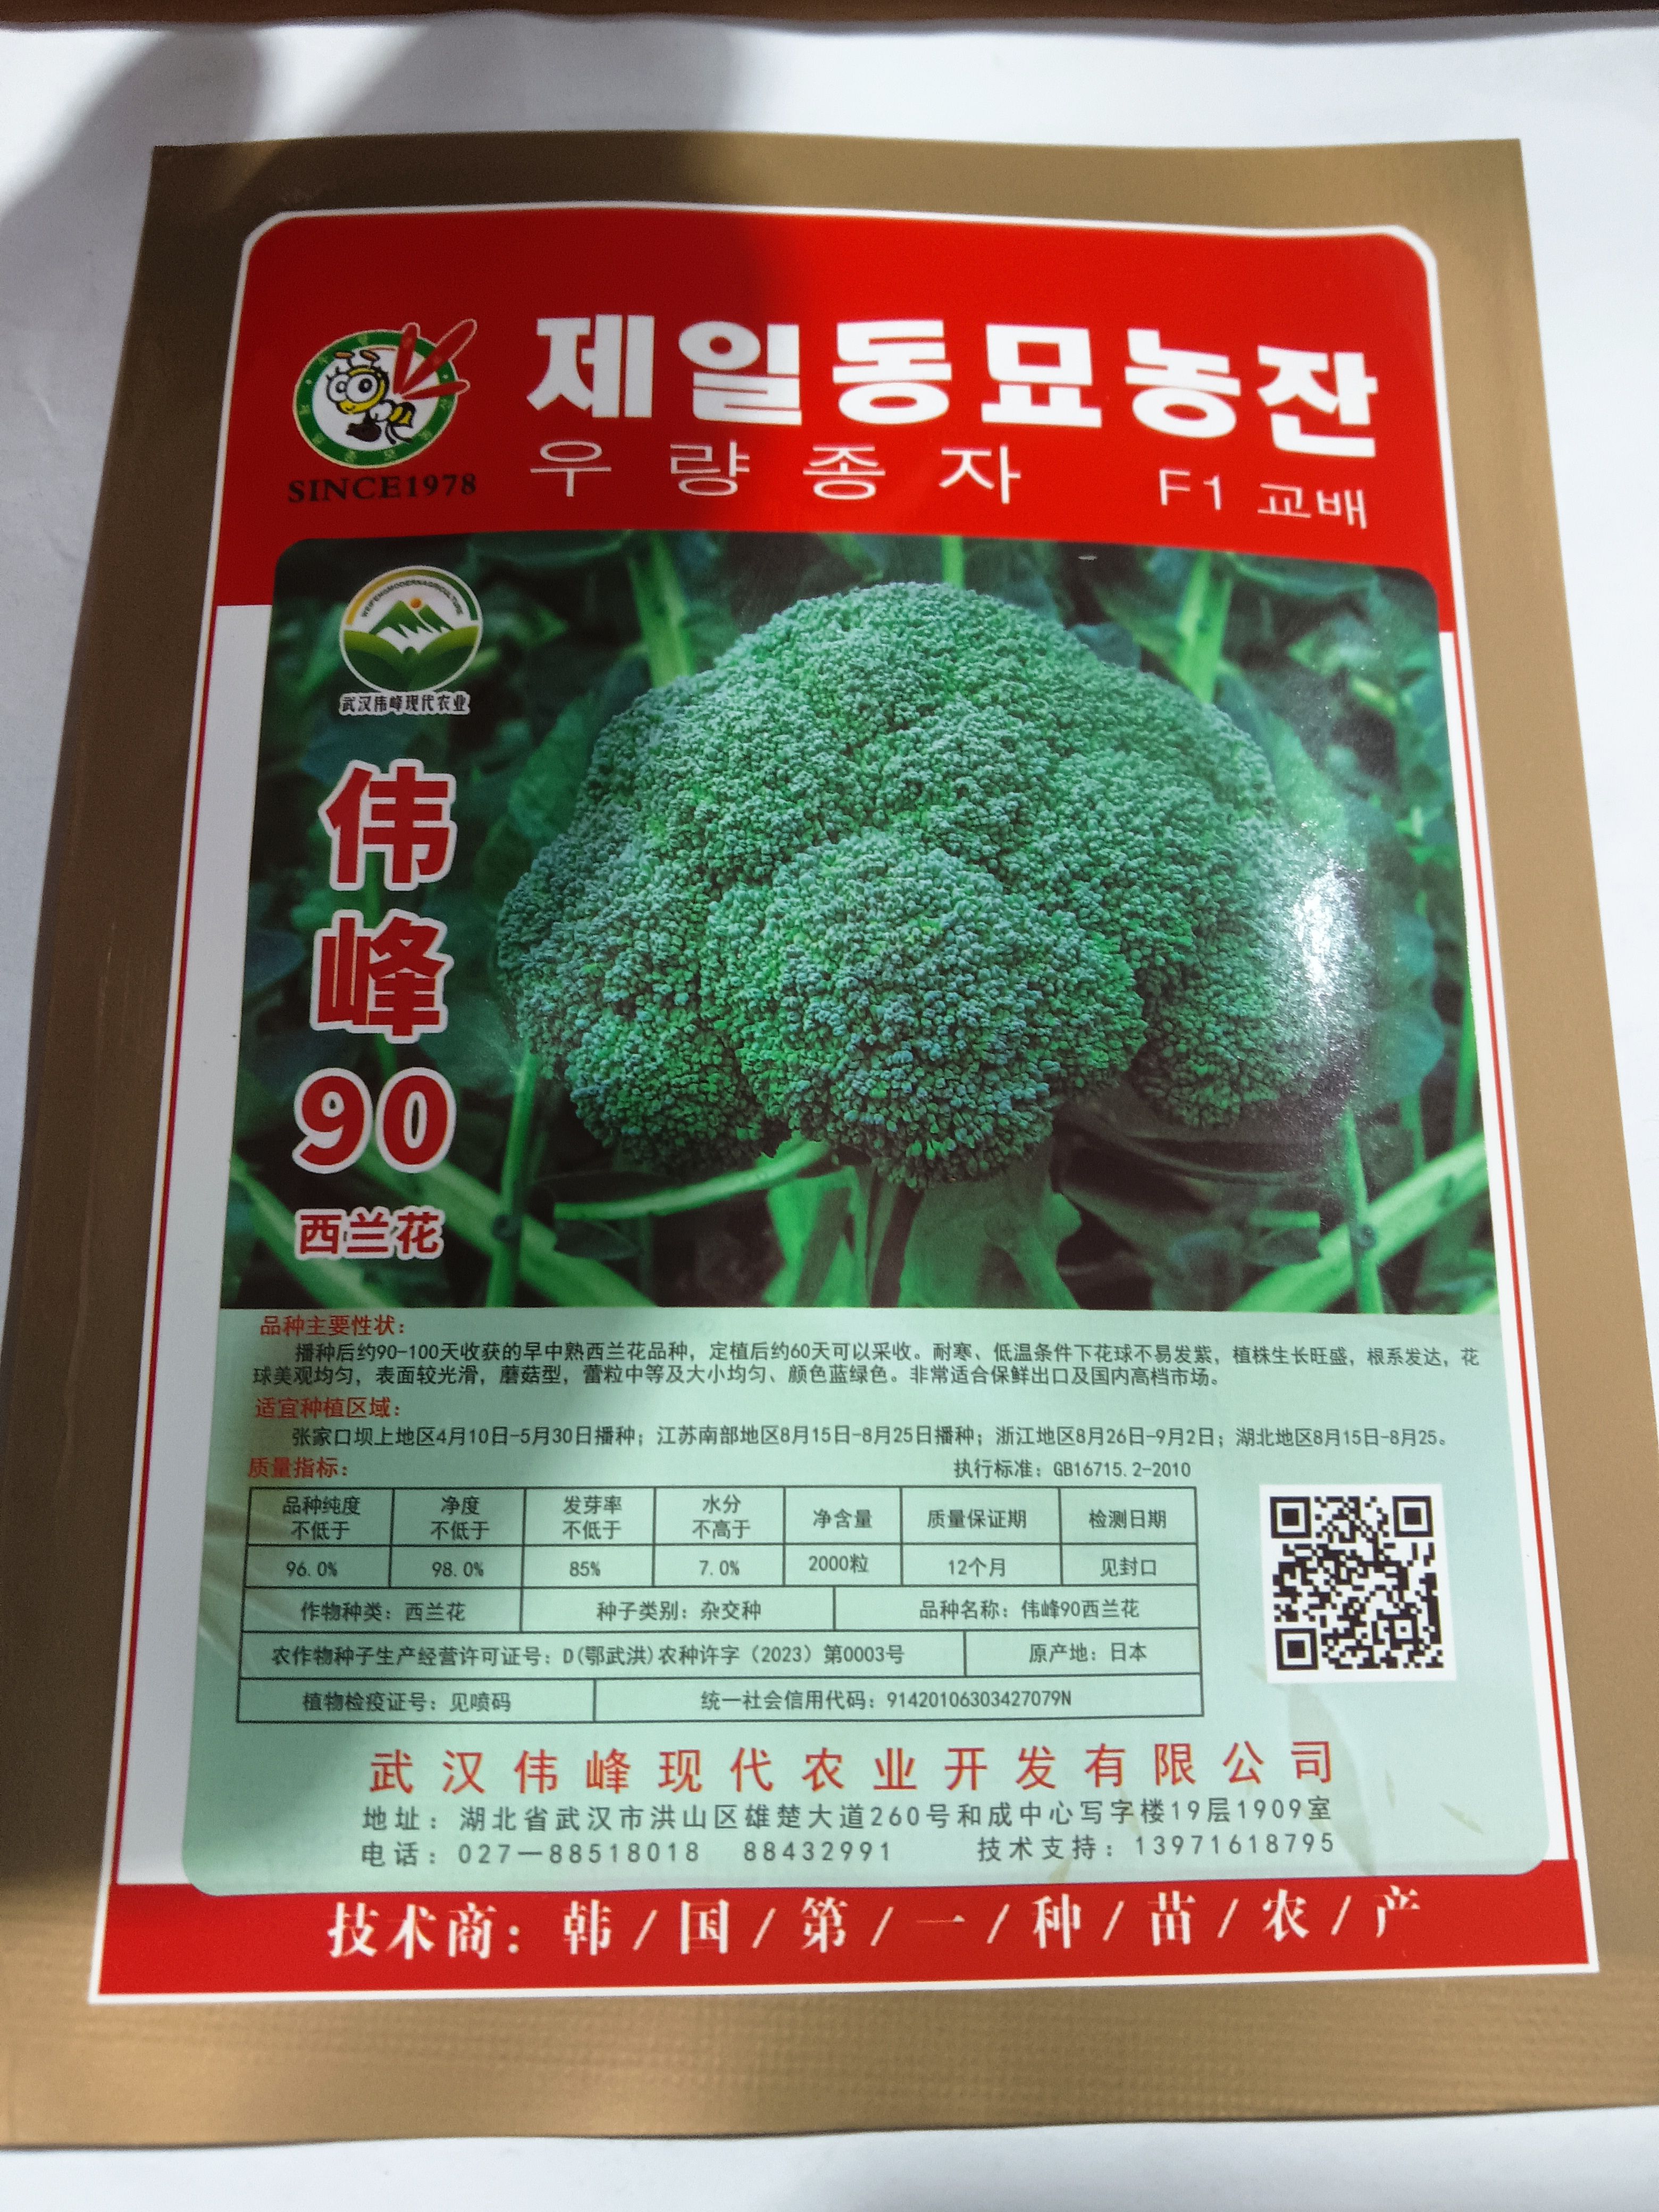 武汉伟峰 90 西兰花韩国优良西兰花种子出口专用稳产优质品种